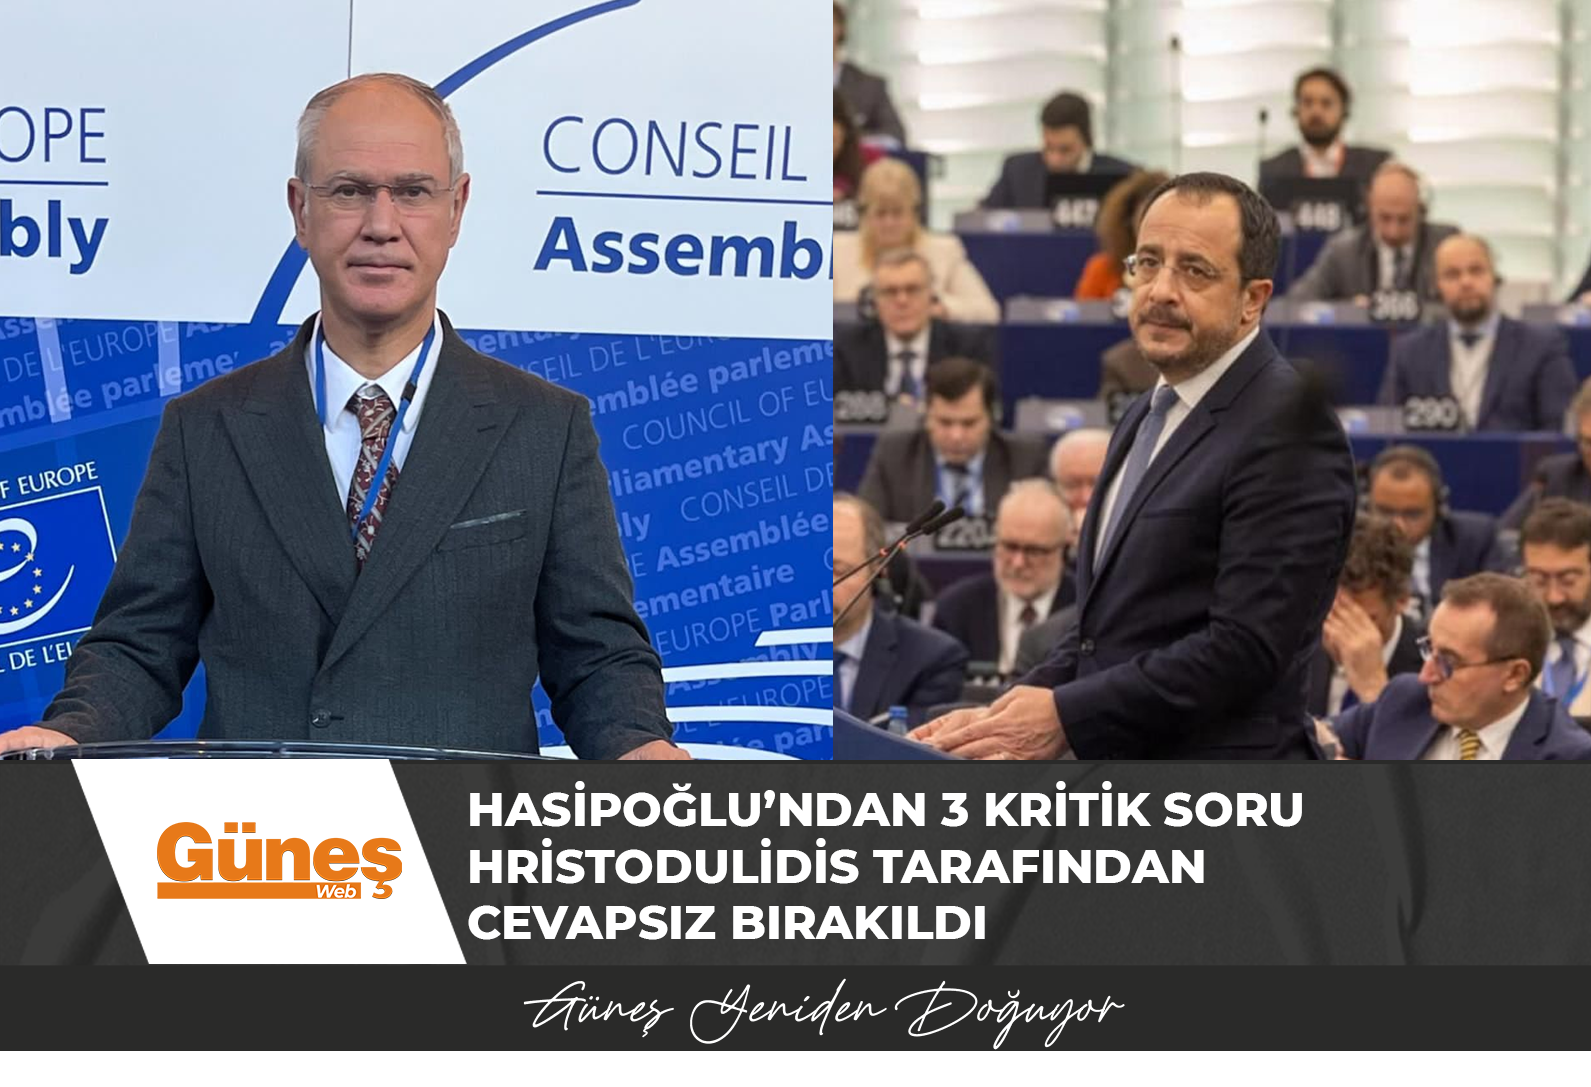 KKTC AKPA Heyet Başkanı Milletvekili Oğuzhan Hasipoğlu, Avrupa Konseyi’nde Rum lider Hristodulidis’i köşeye sıkıştırdı 